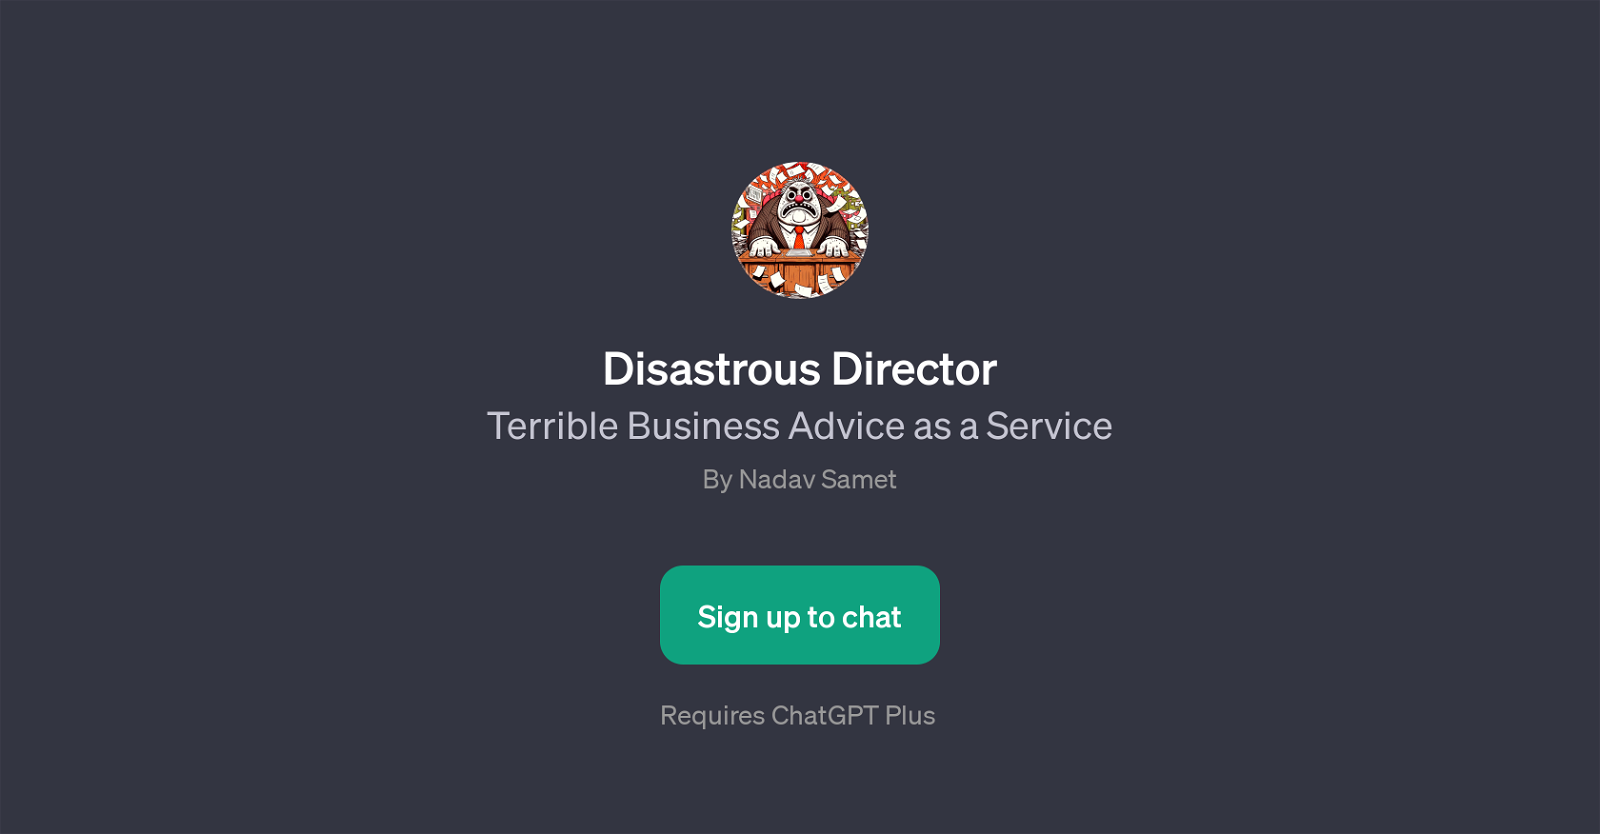 Disastrous Director website